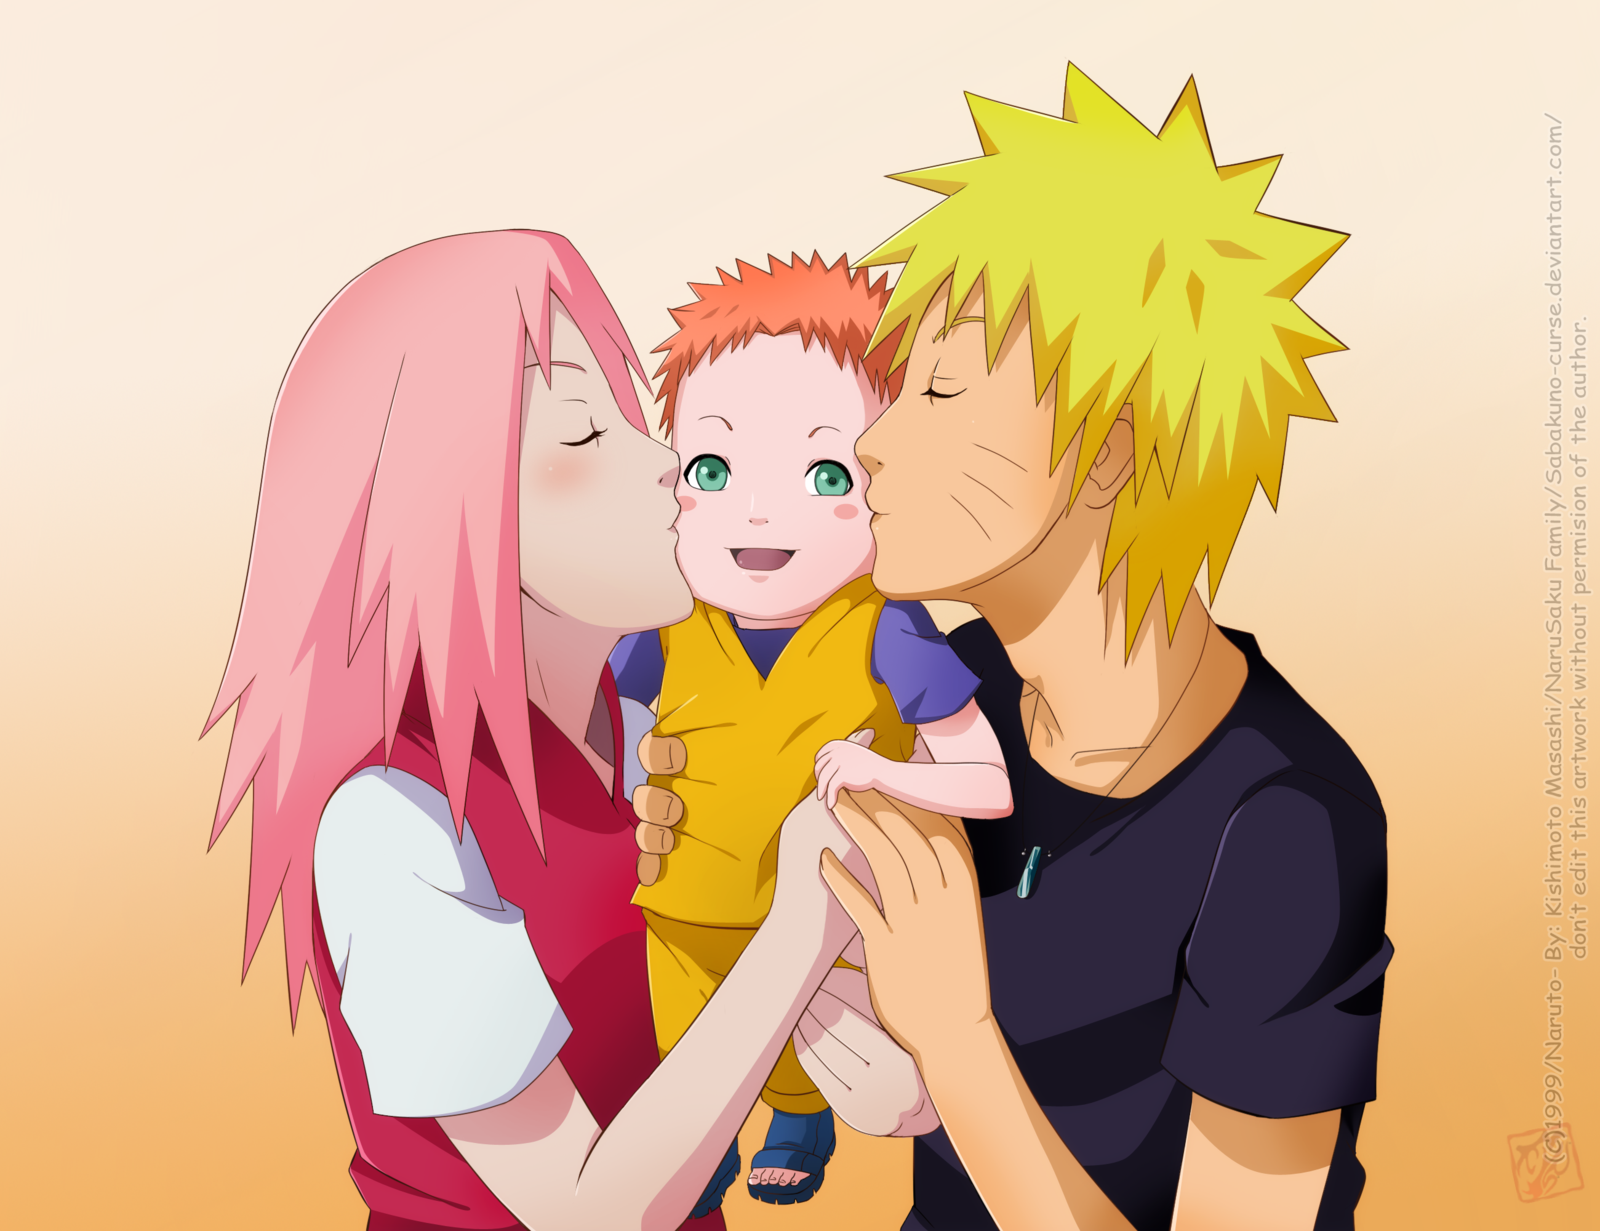 Naruto và Sakura là hai nhân vật không thể thiếu trong bộ truyện Naruto. Tưởng tượng một gia đình chinh phục những thử thách khó khăn bên nhau đến cùng. Và giờ đây, bạn có thể tải hình nền Naruto và Sakura gia đình miễn phí để mang theo những chuyện tình gia đình đáng yêu đó trên điện thoại hay máy tính của mình.